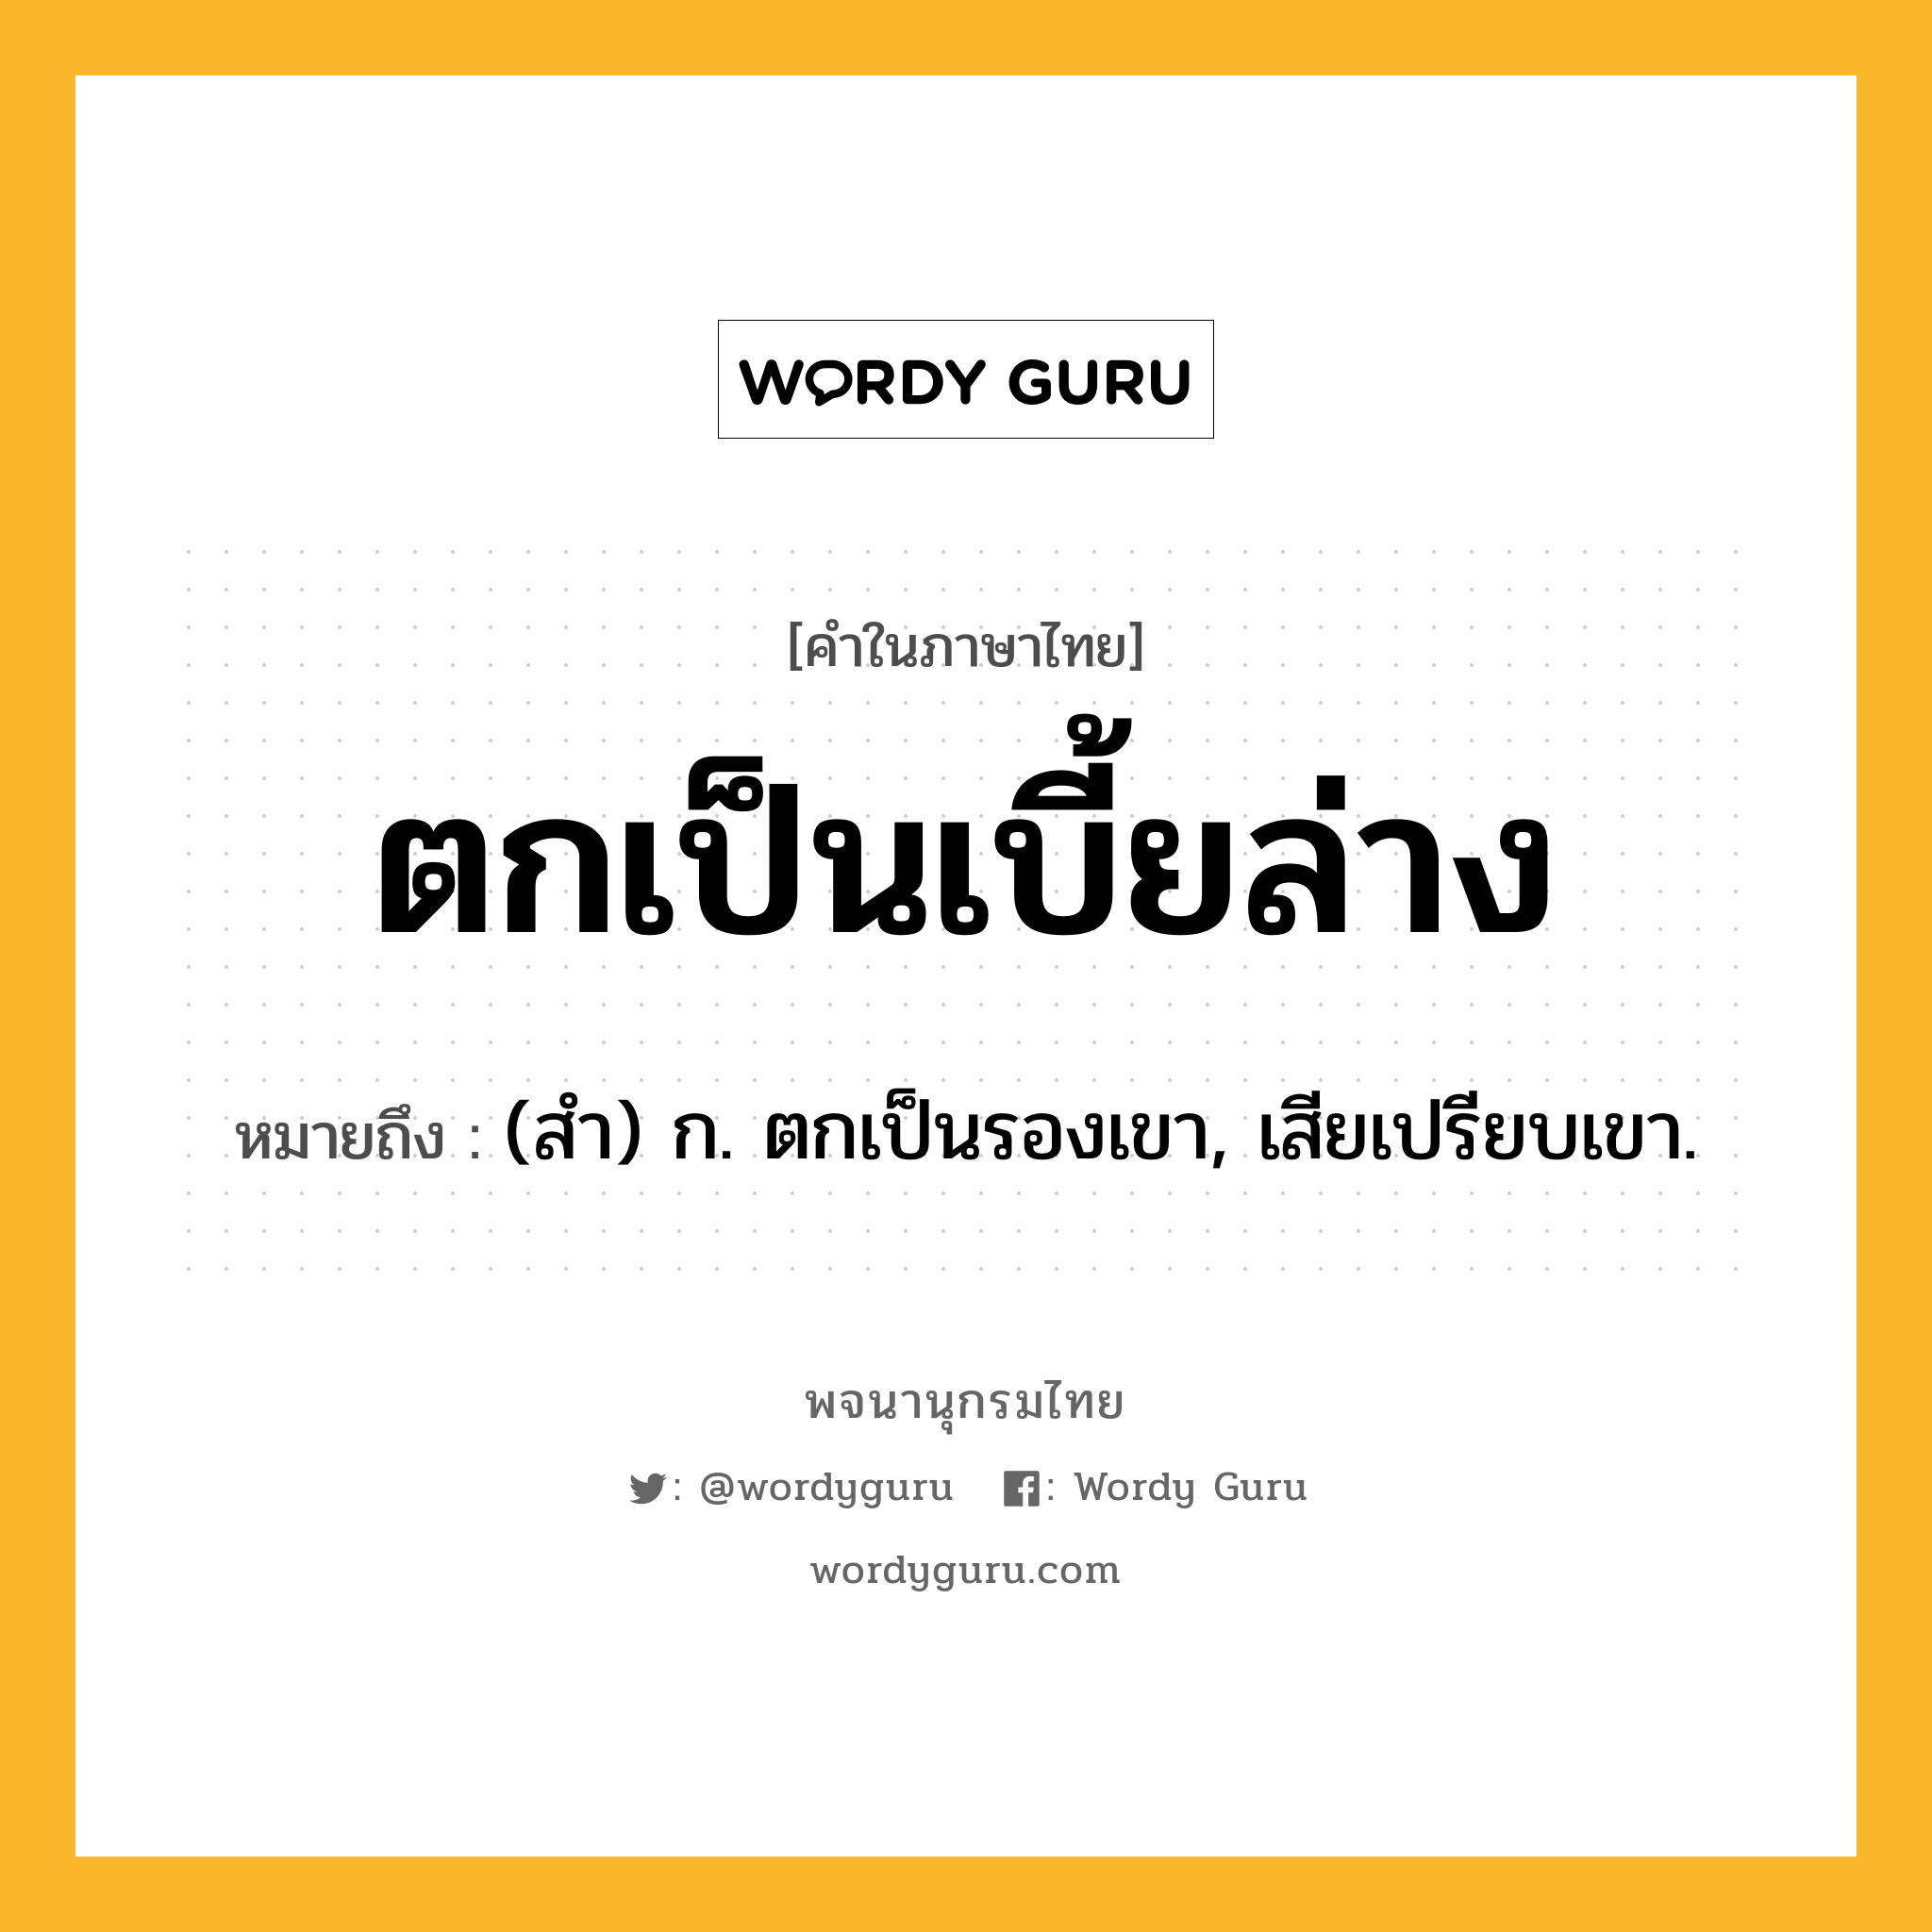 ตกเป็นเบี้ยล่าง ความหมาย หมายถึงอะไร?, คำในภาษาไทย ตกเป็นเบี้ยล่าง หมายถึง (สํา) ก. ตกเป็นรองเขา, เสียเปรียบเขา.